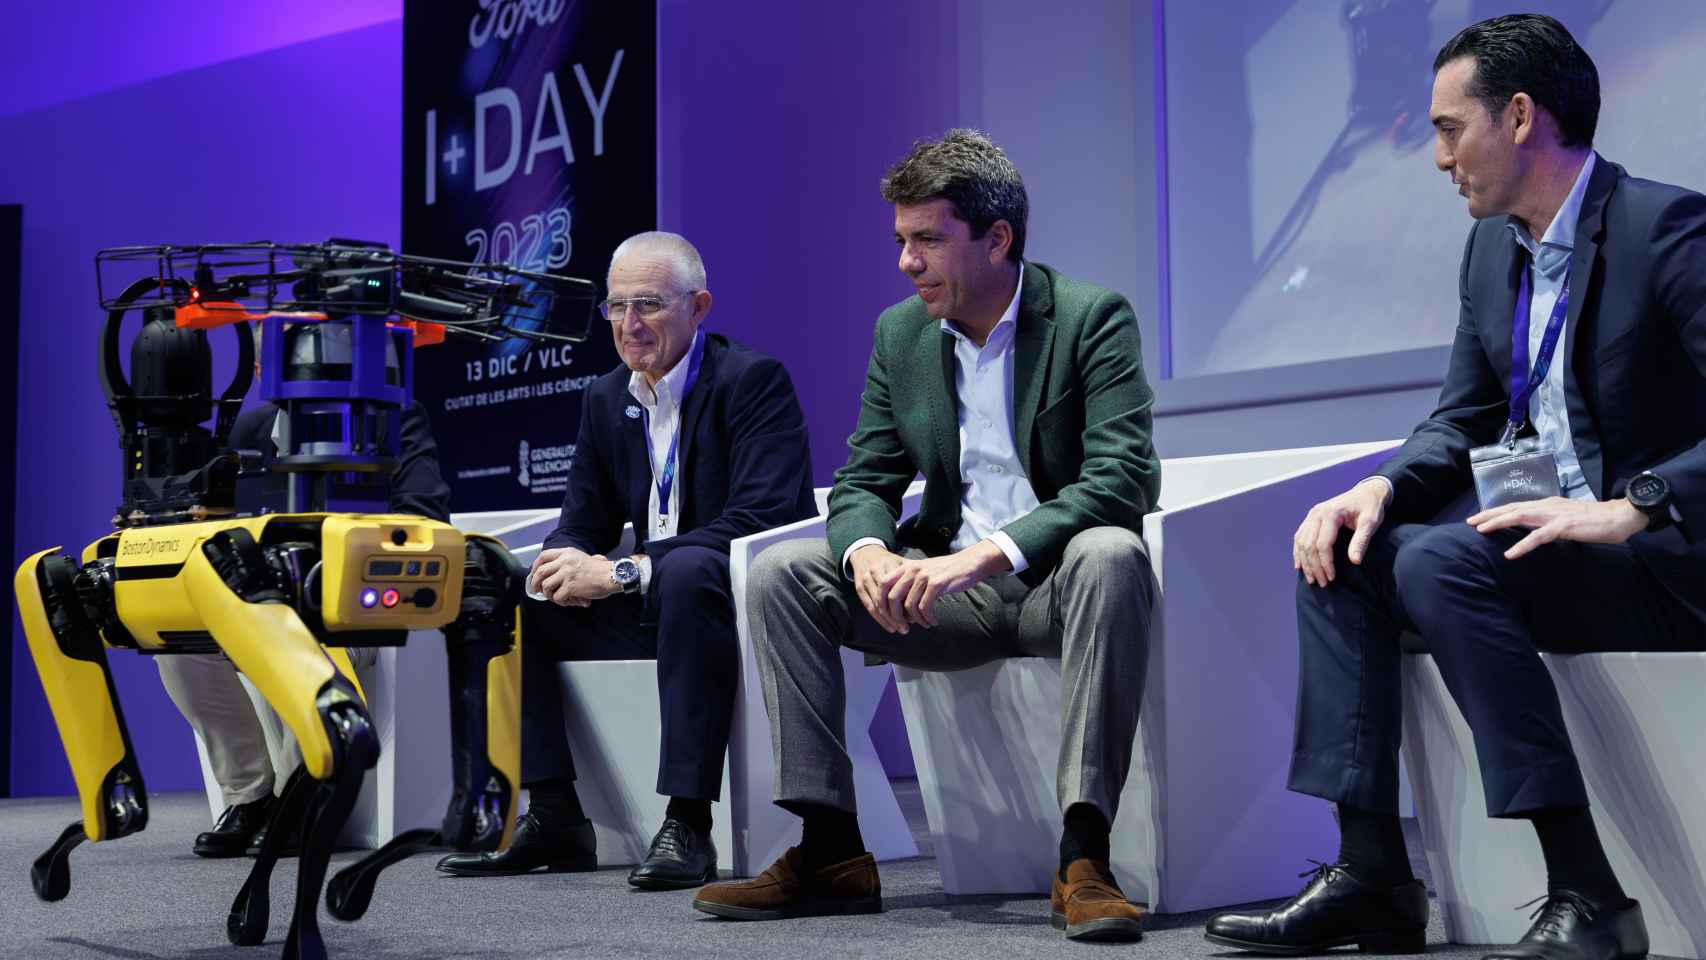 El president de la Generalitat, Carlos Mazón, el director de Fabricación de Ford España y el presidente de AVIA durante la jornada I+Day 2023 celebrada por Ford. Efe/Biel Aliño